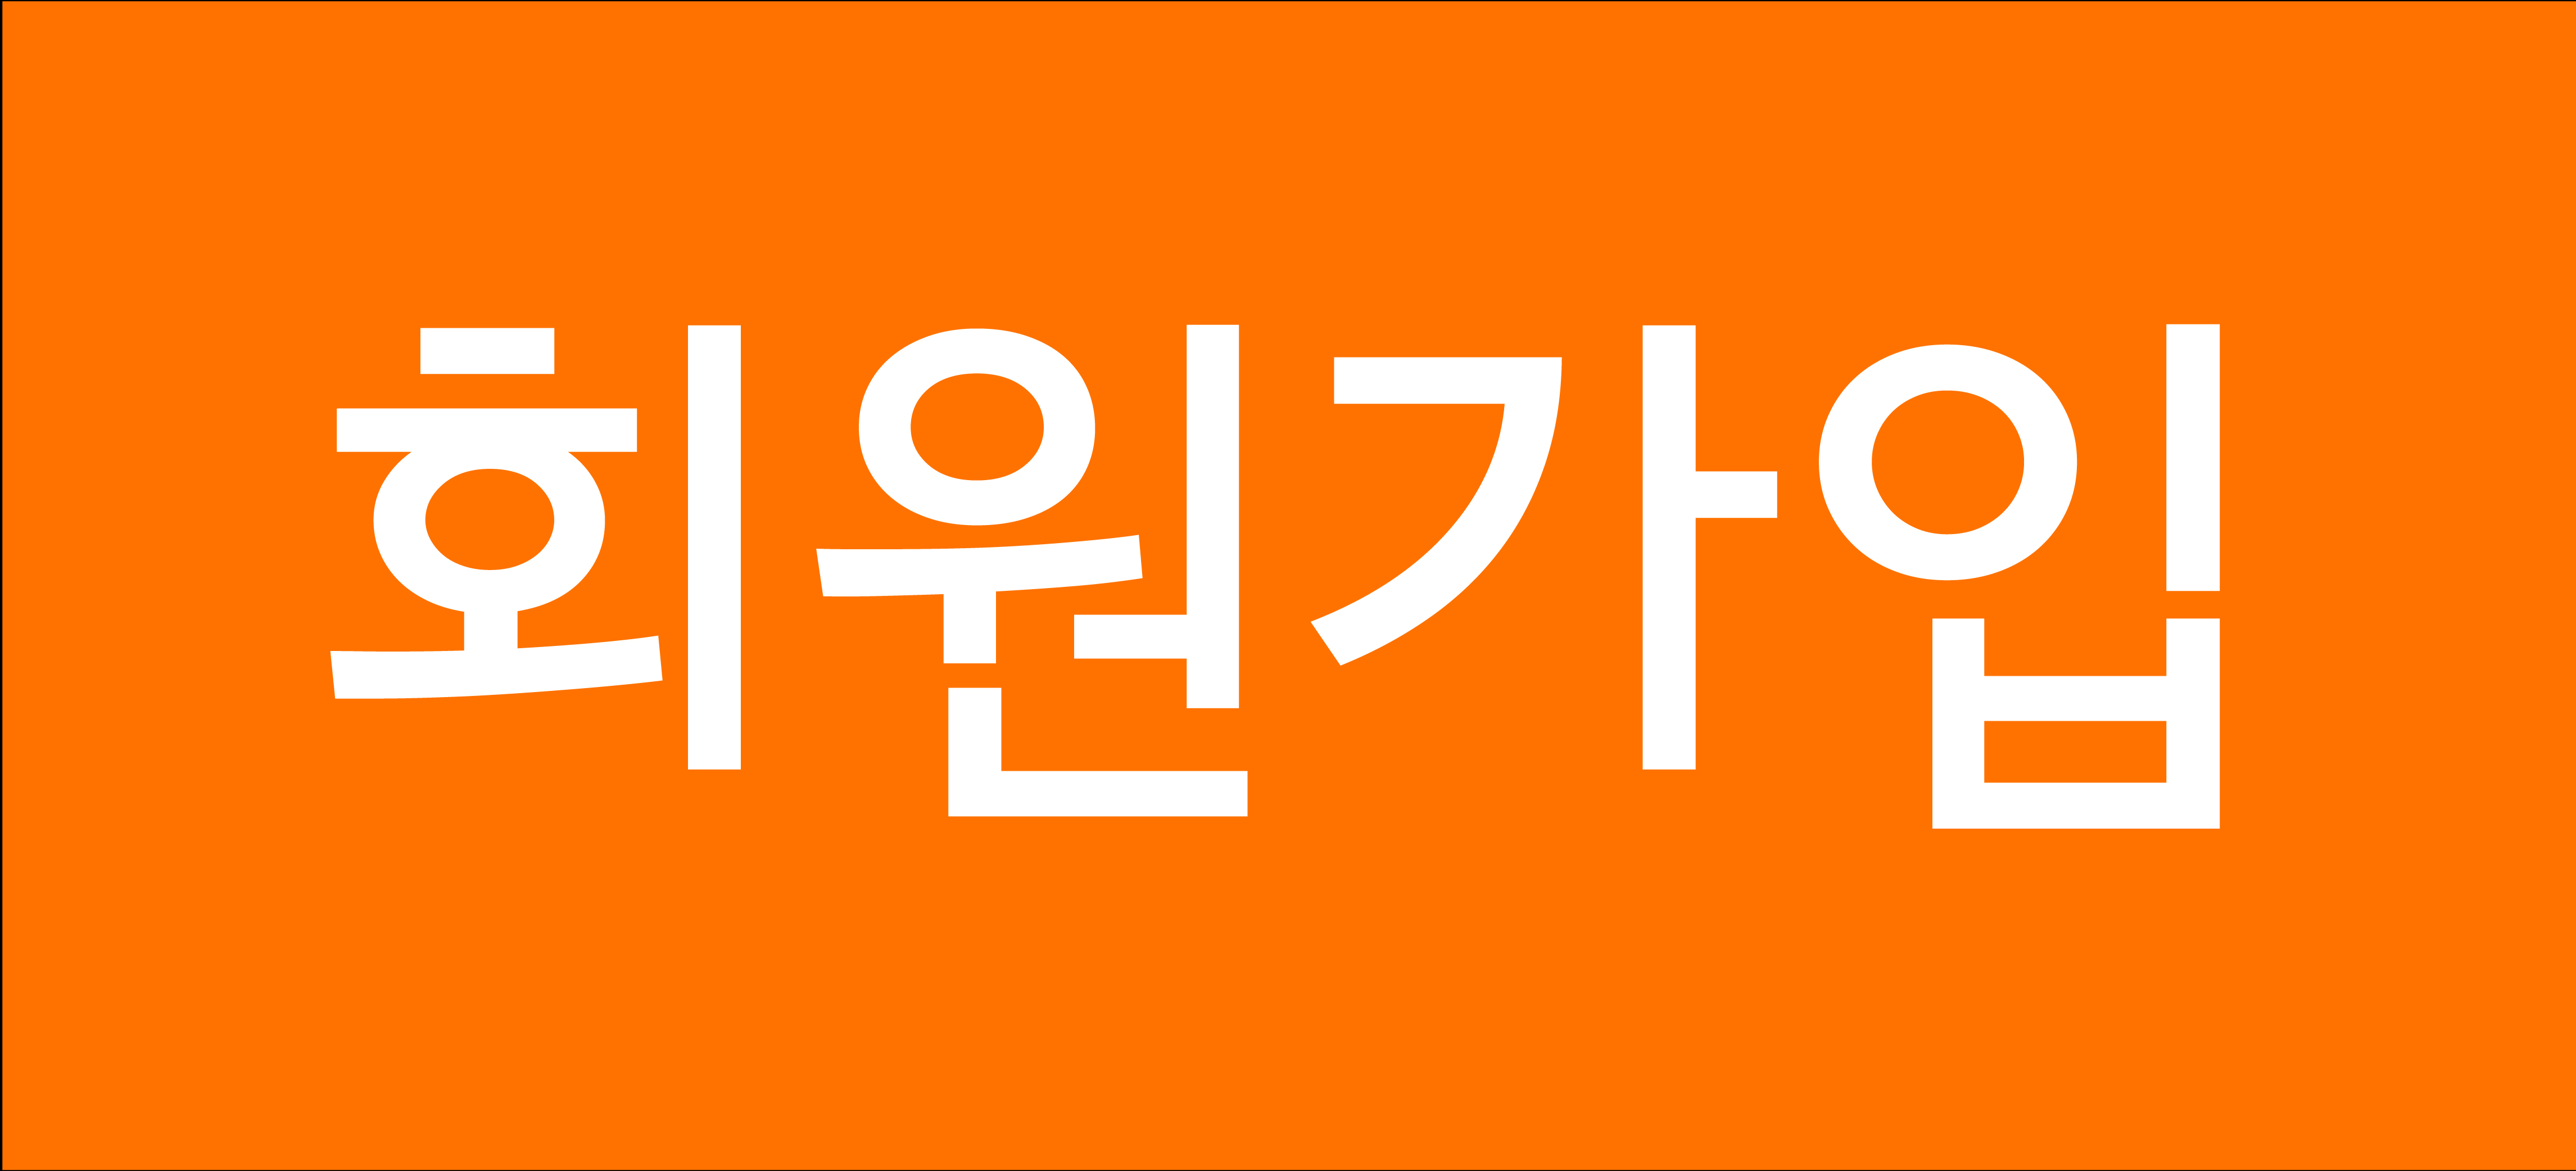 대원외국어고등학교 '희망나눔 마스크' 및 '희망 전등 그린라이트' 제작 봉사활동 진행 : Sdg Book Club Korea